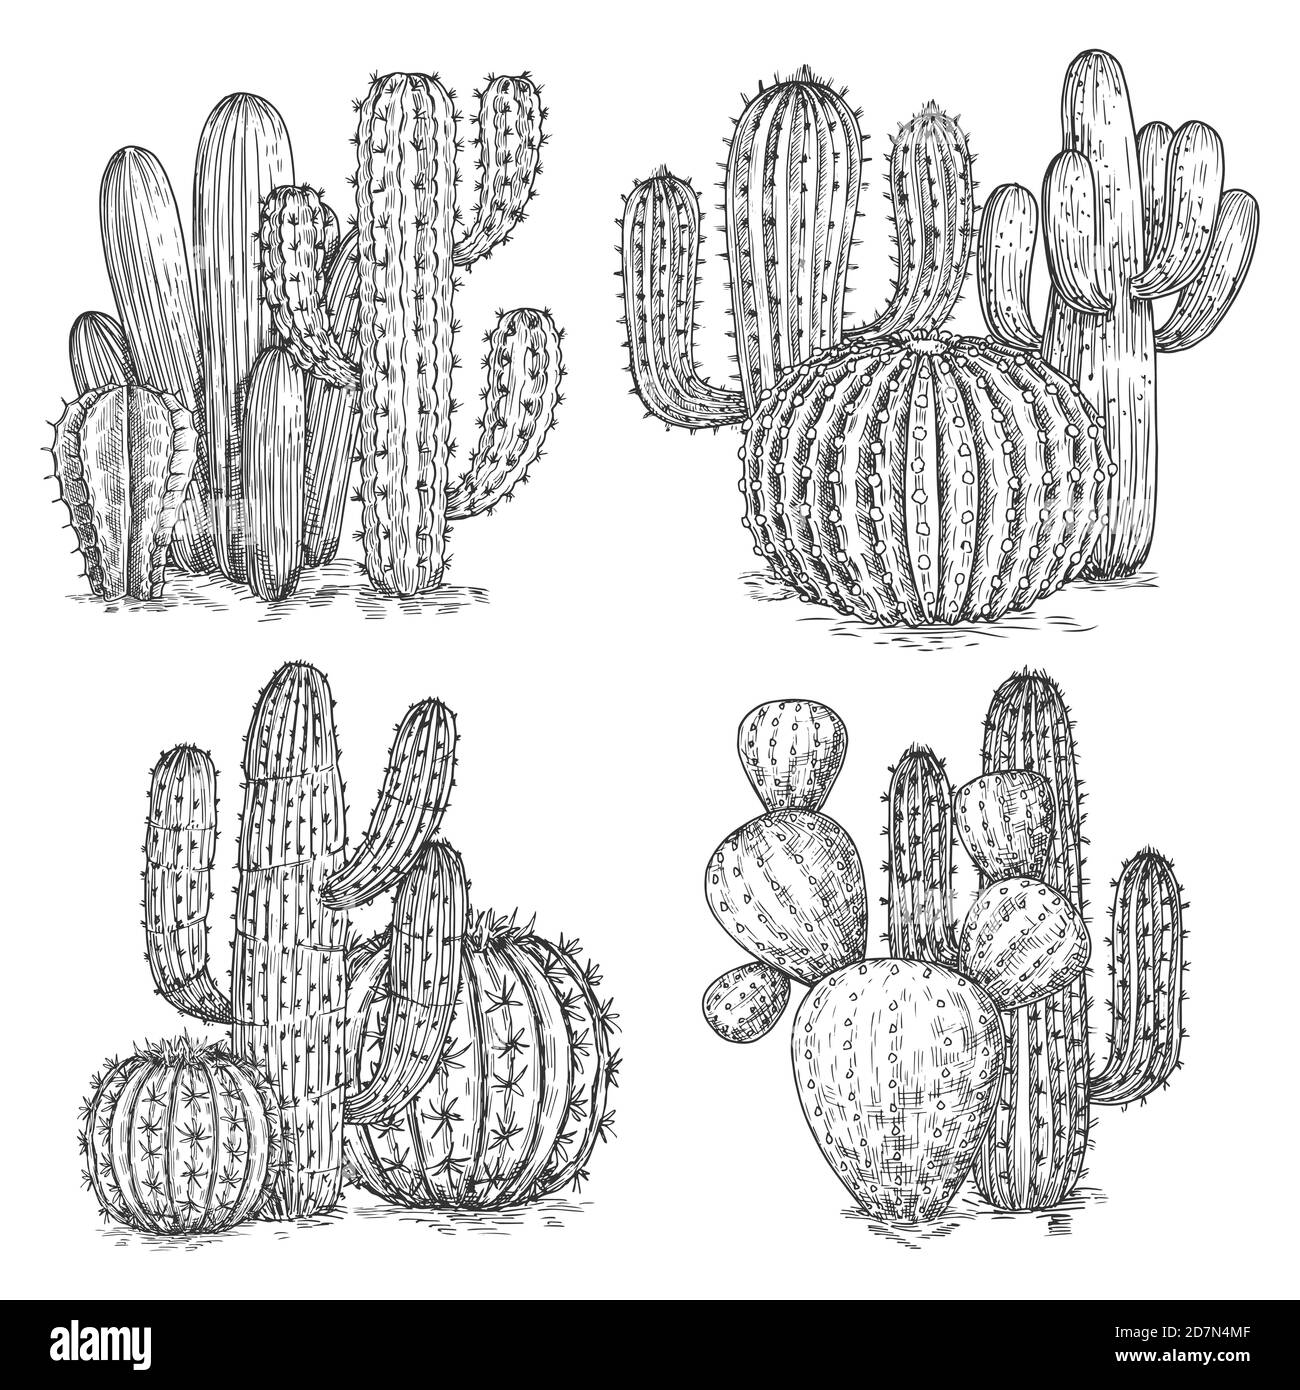 Ilustración de vector de cactus croquizado a mano. Composiciones de flores del desierto aisladas sobre fondo blanco. Ilustración de cactus mexicanos, planta de boceto Ilustración del Vector